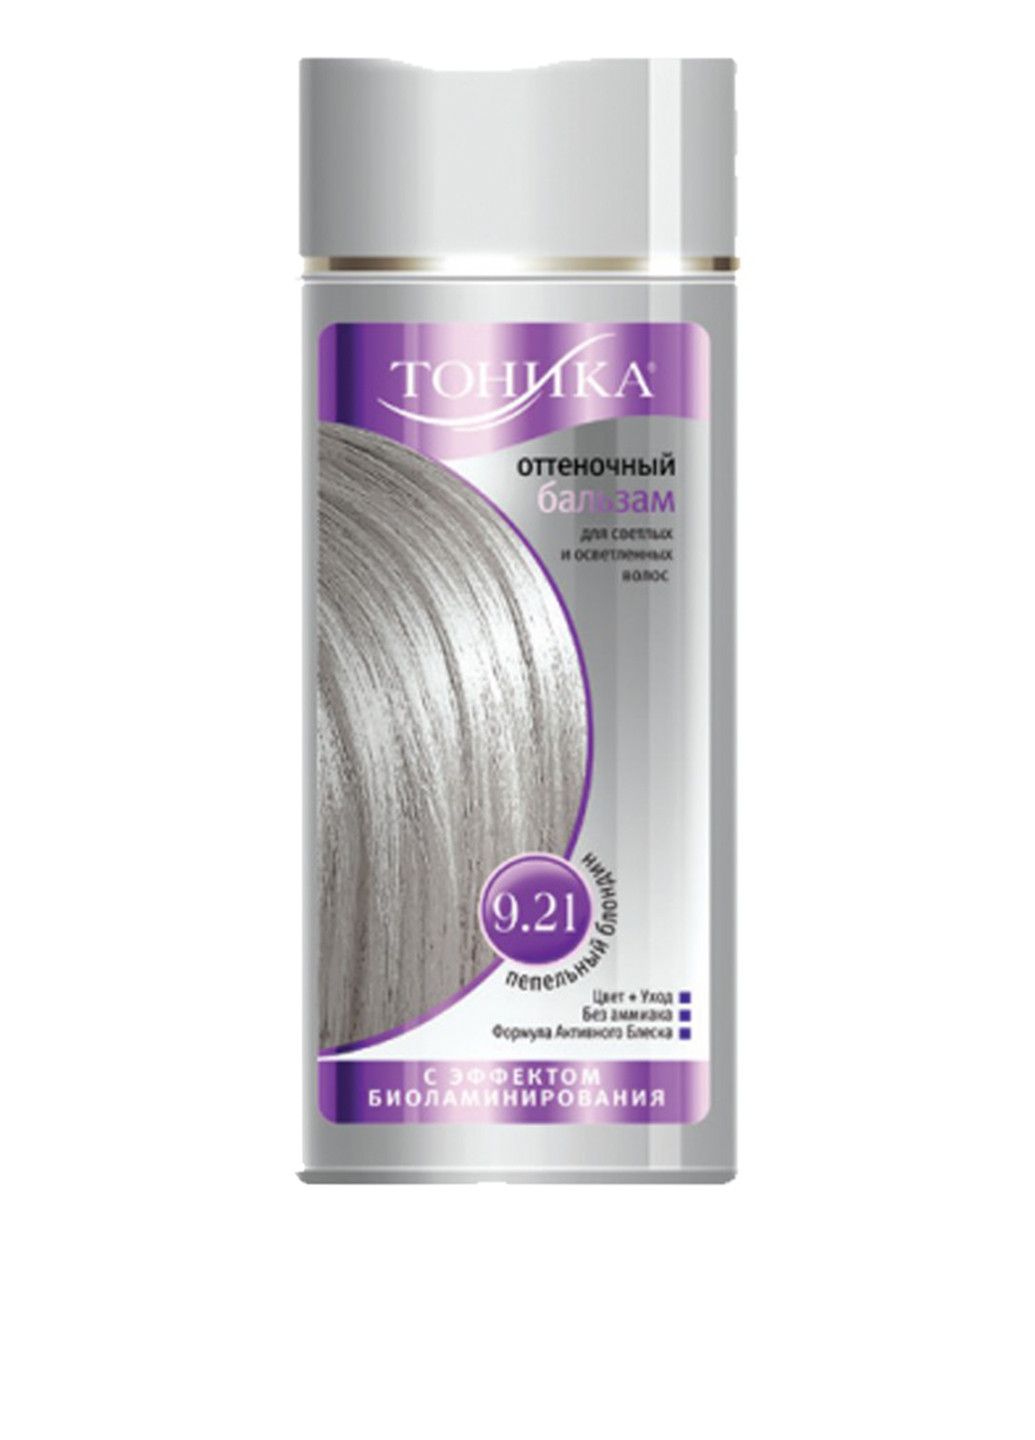 Бальзам оттеночный для волос с эффектом биоламинирования 9.21 (Пепельный блондин), 150 мл Тоника (75101130)